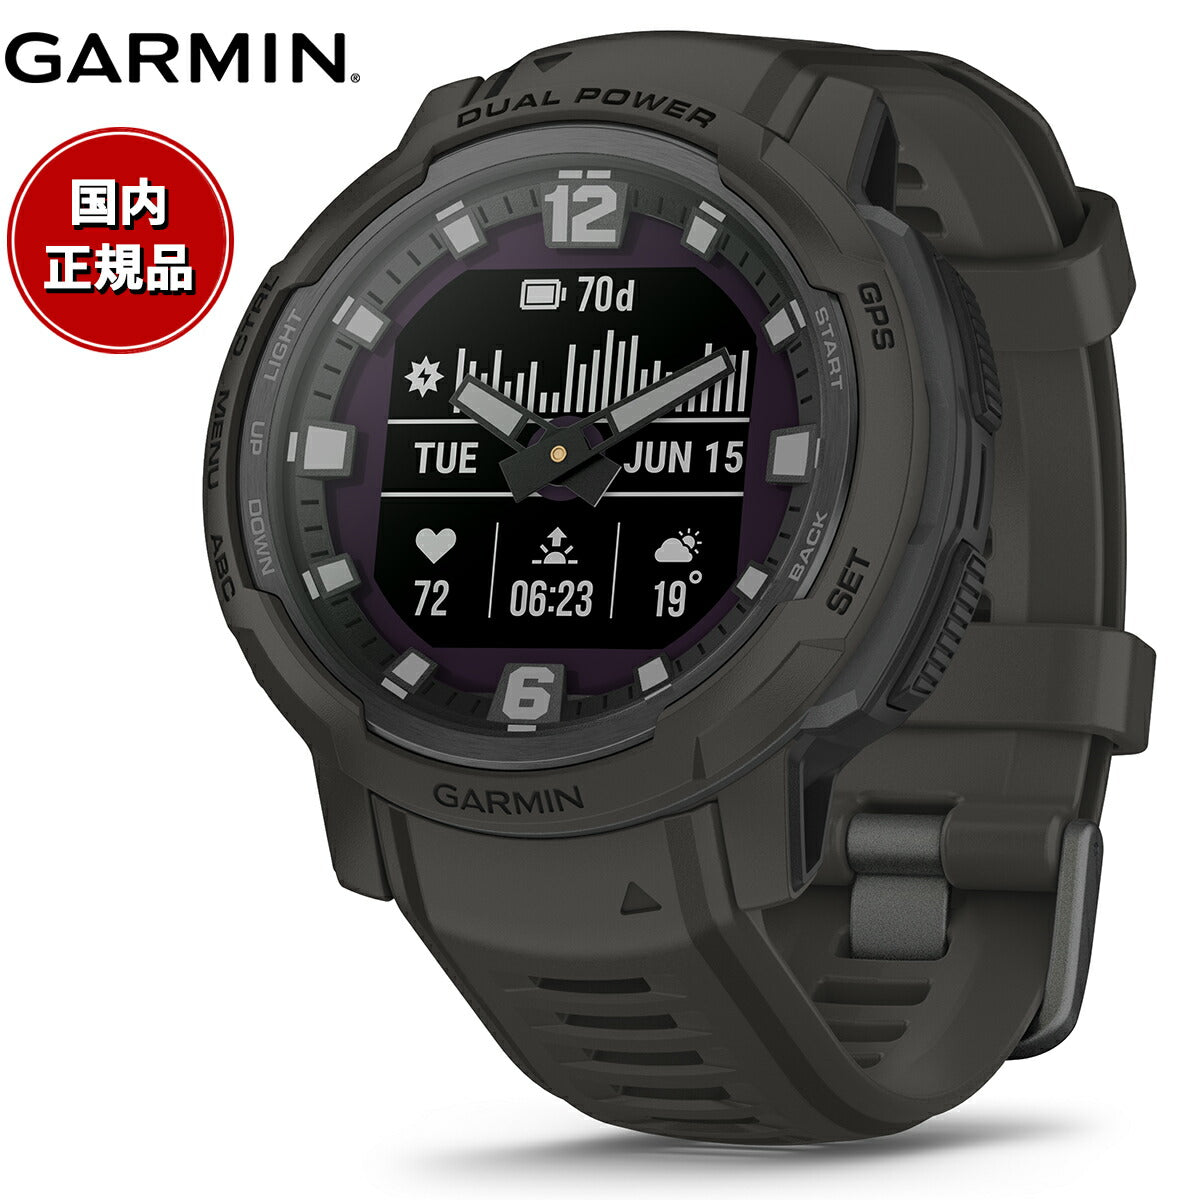 【24回分割手数料無料！】ガーミン GARMIN Instinct Crossover インスティンクト クロスオーバー デュアルパワー 010-02730-41 Dual Power Graphite GPS スマートウォッチ アウトドア 腕時計